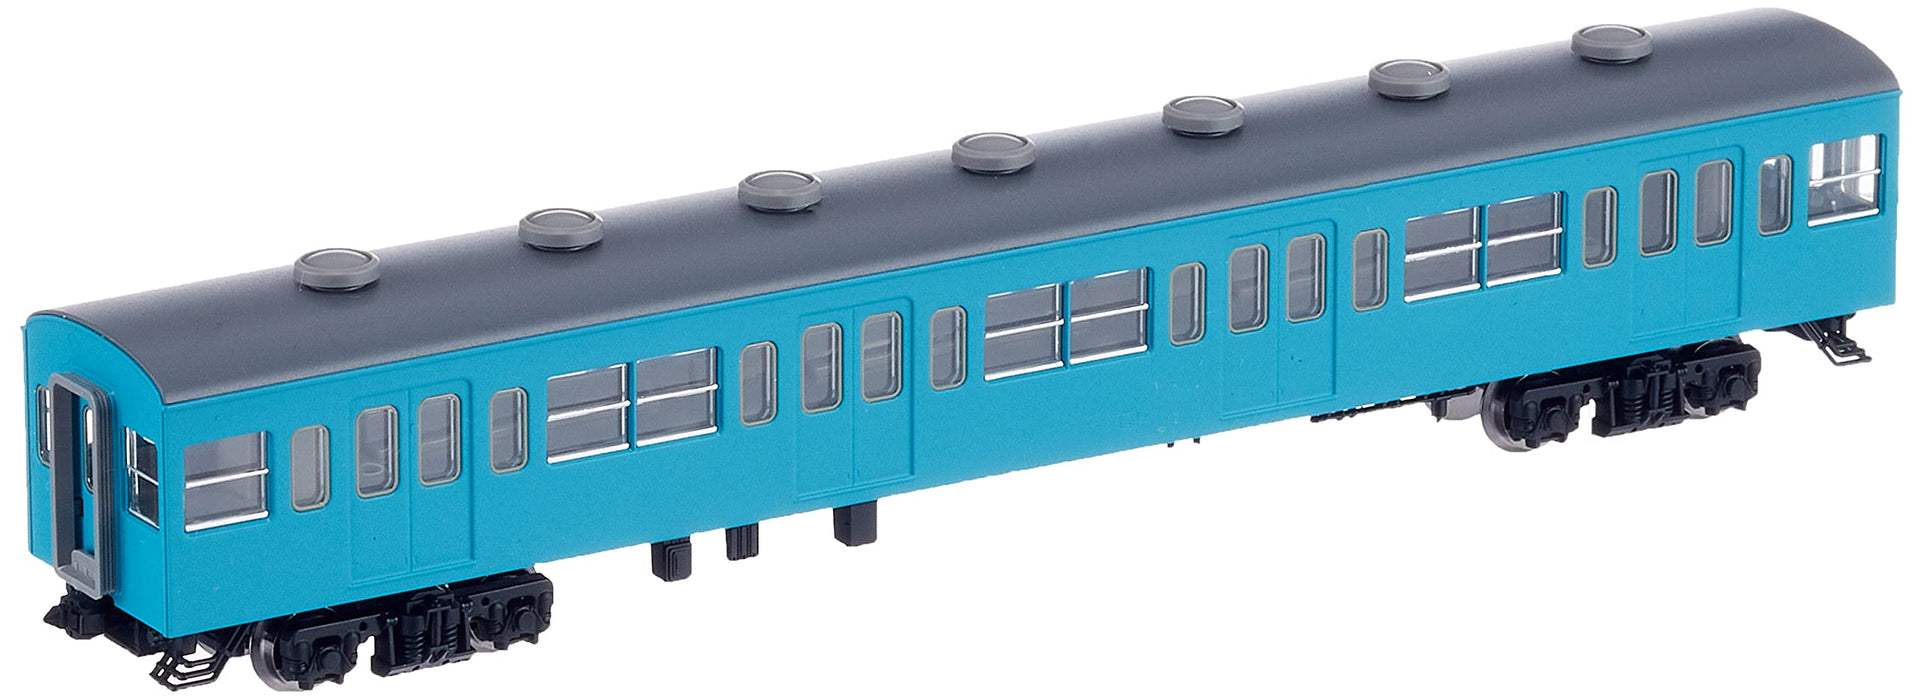 Tomytec Tomix N Gauge Saha 103 Premier modèle de train non climatisé Bleu ciel 9008